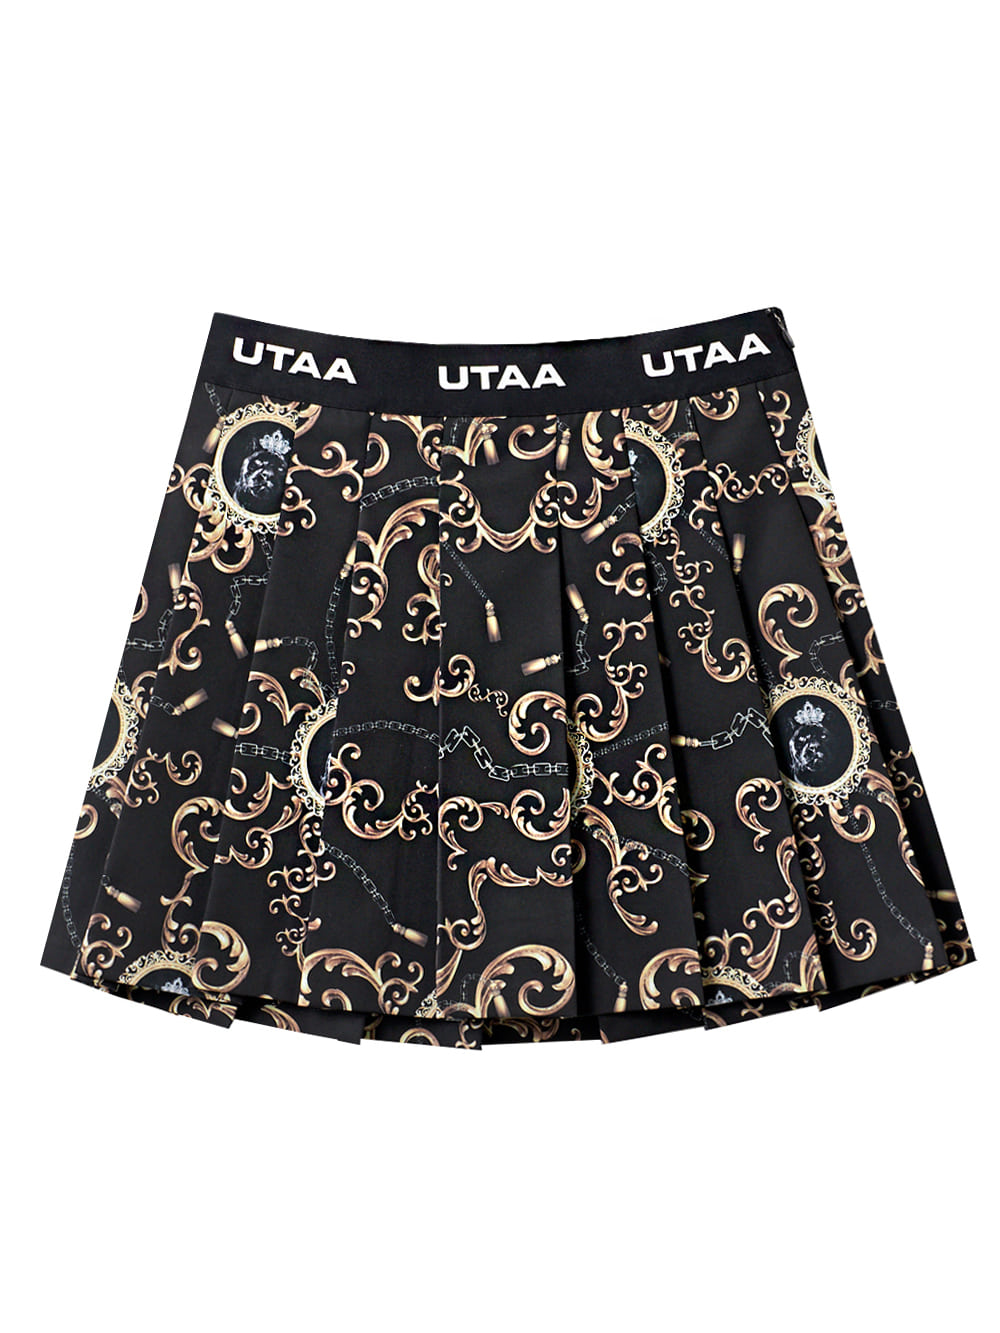 UTAA Cryptic Stellar Pleats Skirt : Black(UD1SKF831BK)